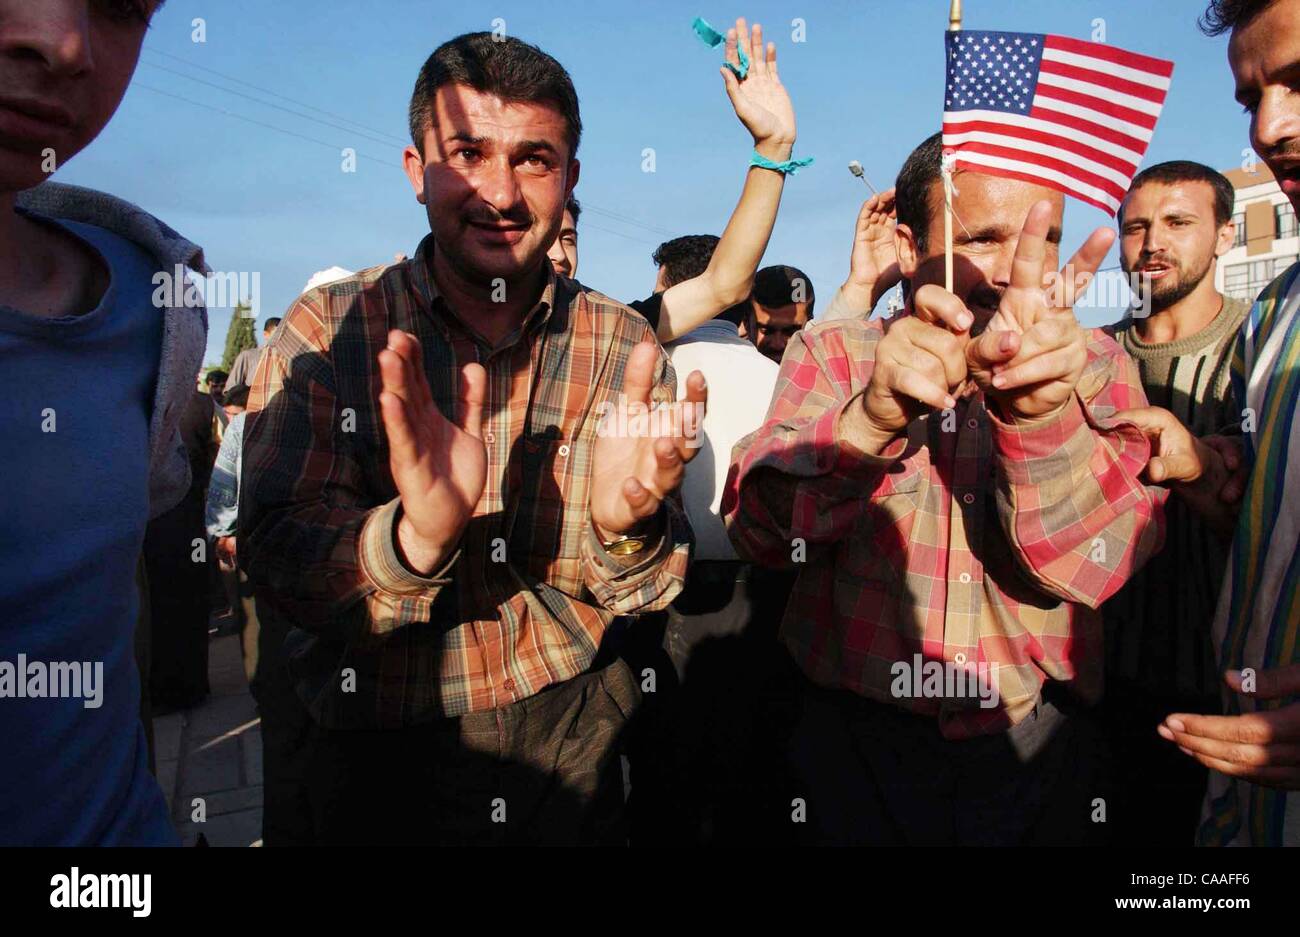 (Publié le 04/13/2003, A-12) : NC KIRKOUK x010 .......... Le 10 avril 2003, Kirkouk, Irak ......brandissant le drapeau américain Kurdishmen de Kirkouk la danse dans les rues après l'heure ils ont détruit une statue de 25 pieds de hauteur du Président Saddam Hussein. Les hommes et les femmes dans les rues inondées après les forces de coalition cla Banque D'Images